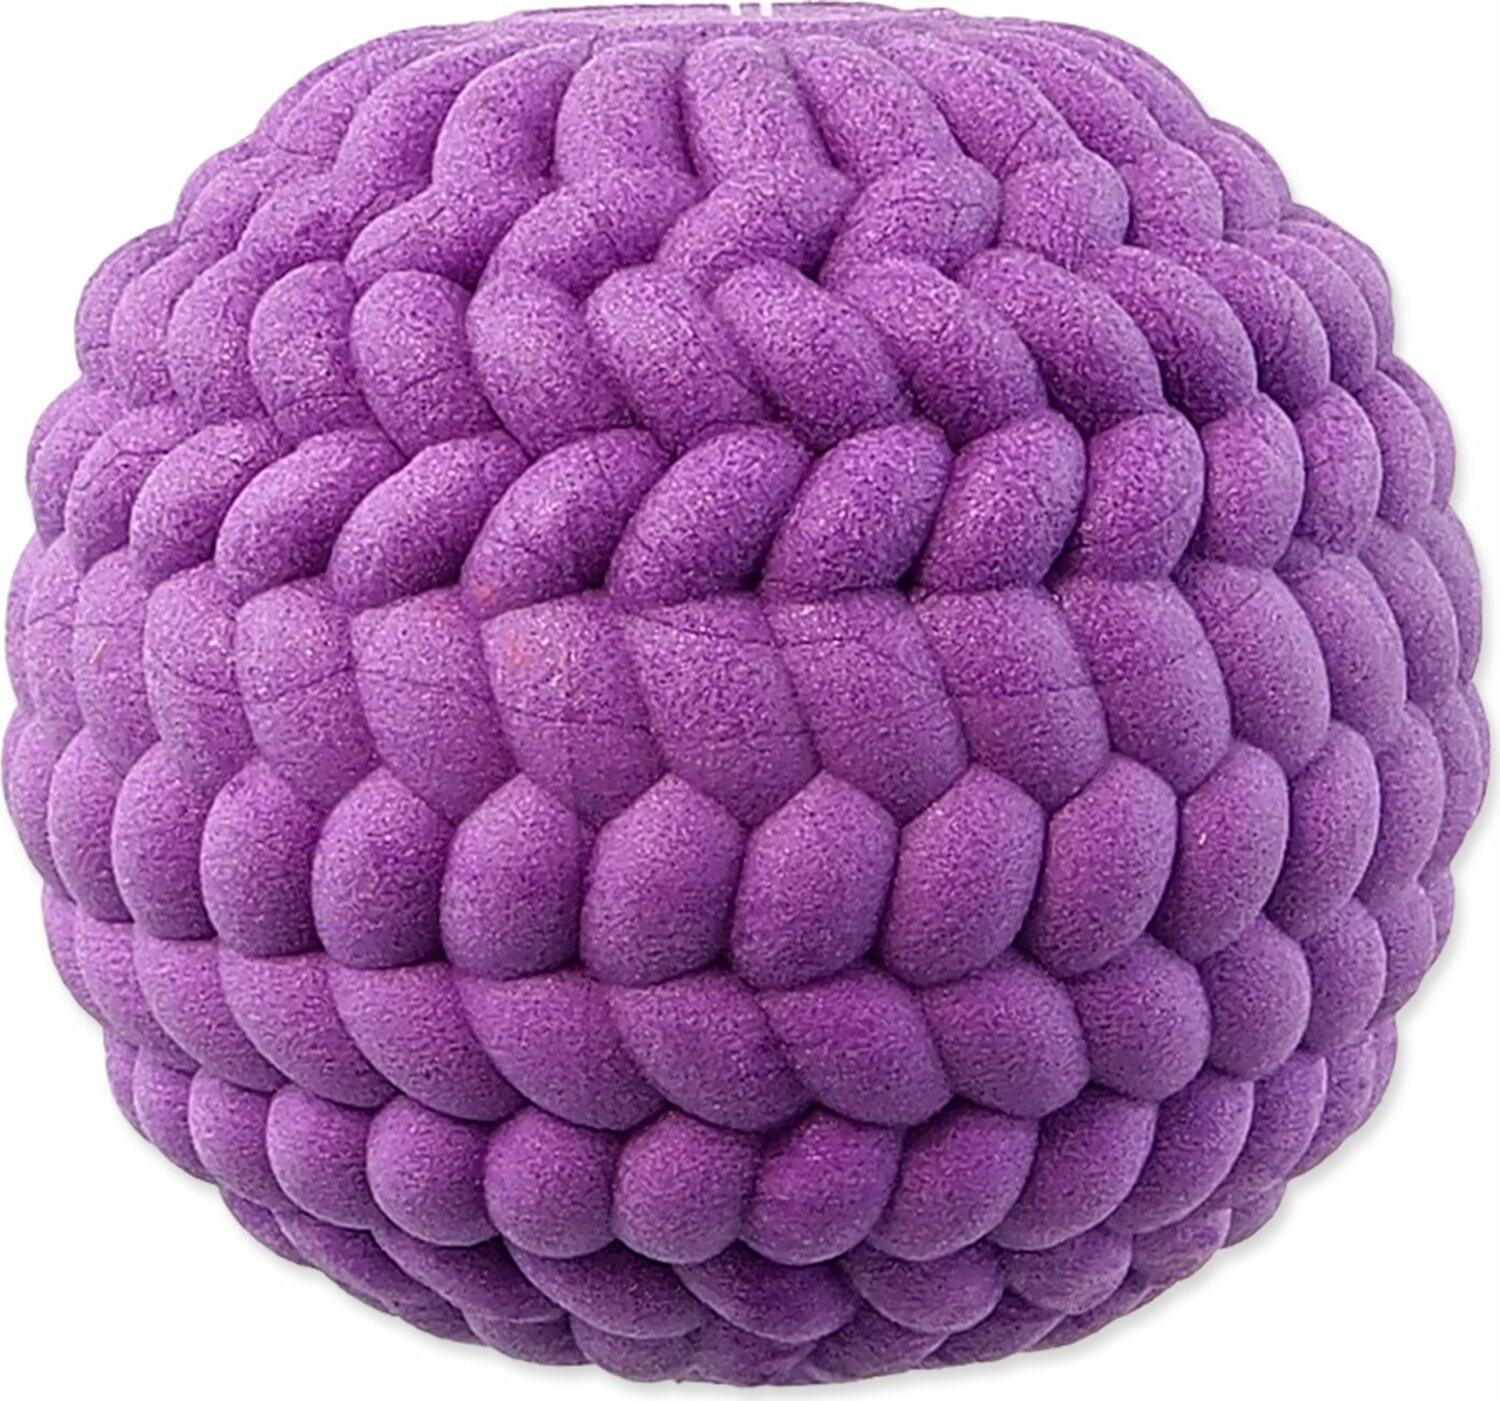 Hračka Dog Fantasy míč TPR pěna fialová 6cm